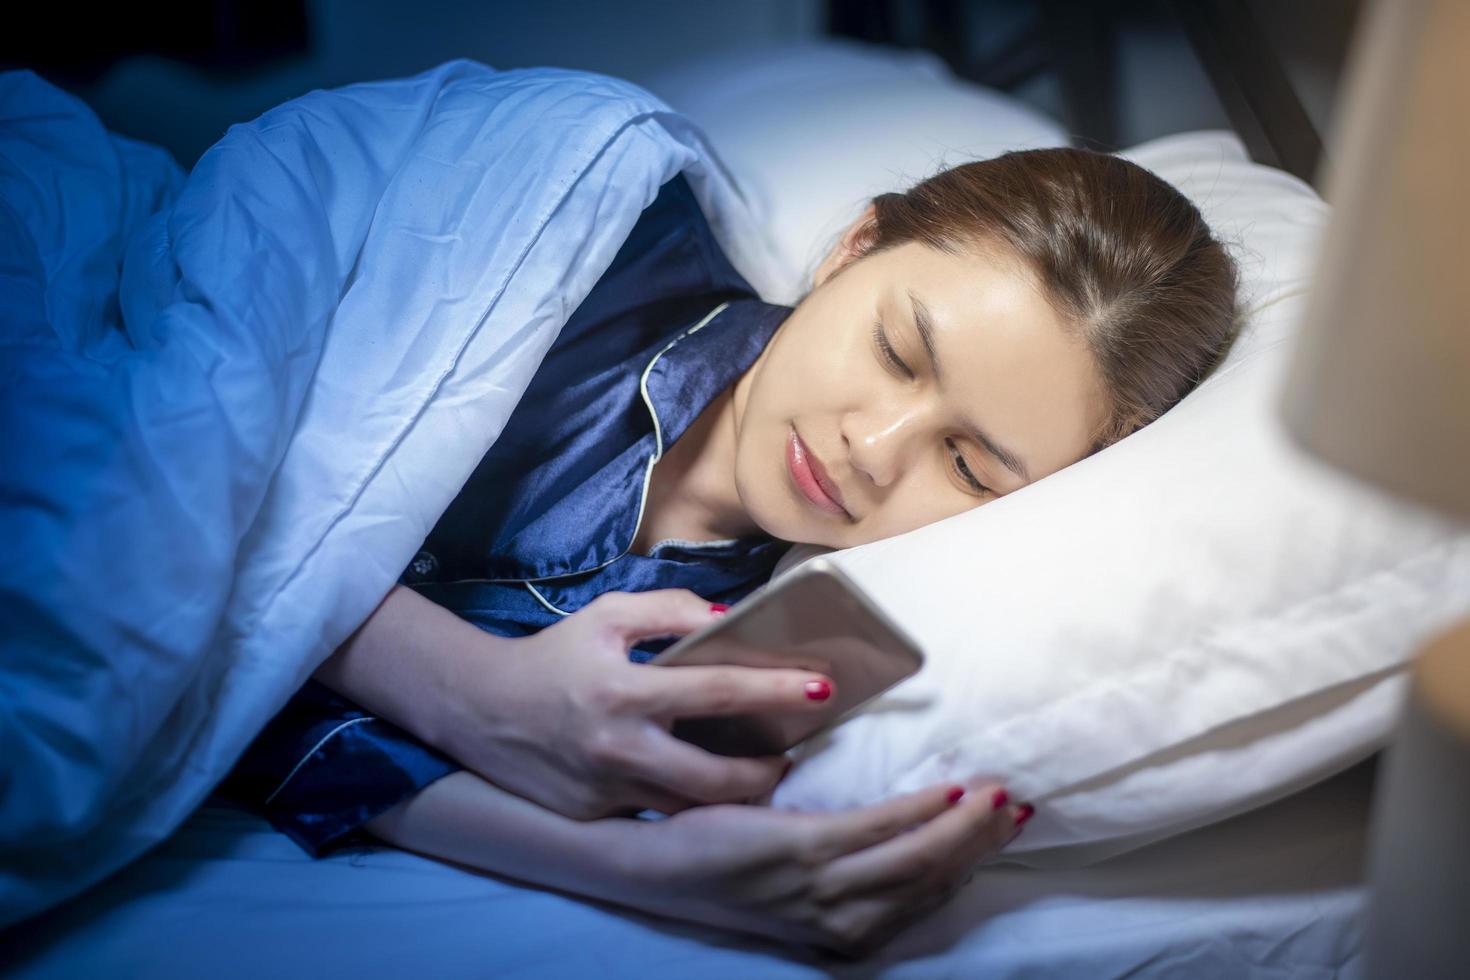 Mulher bonita jogando telefone inteligente antes de dormir no quarto foto